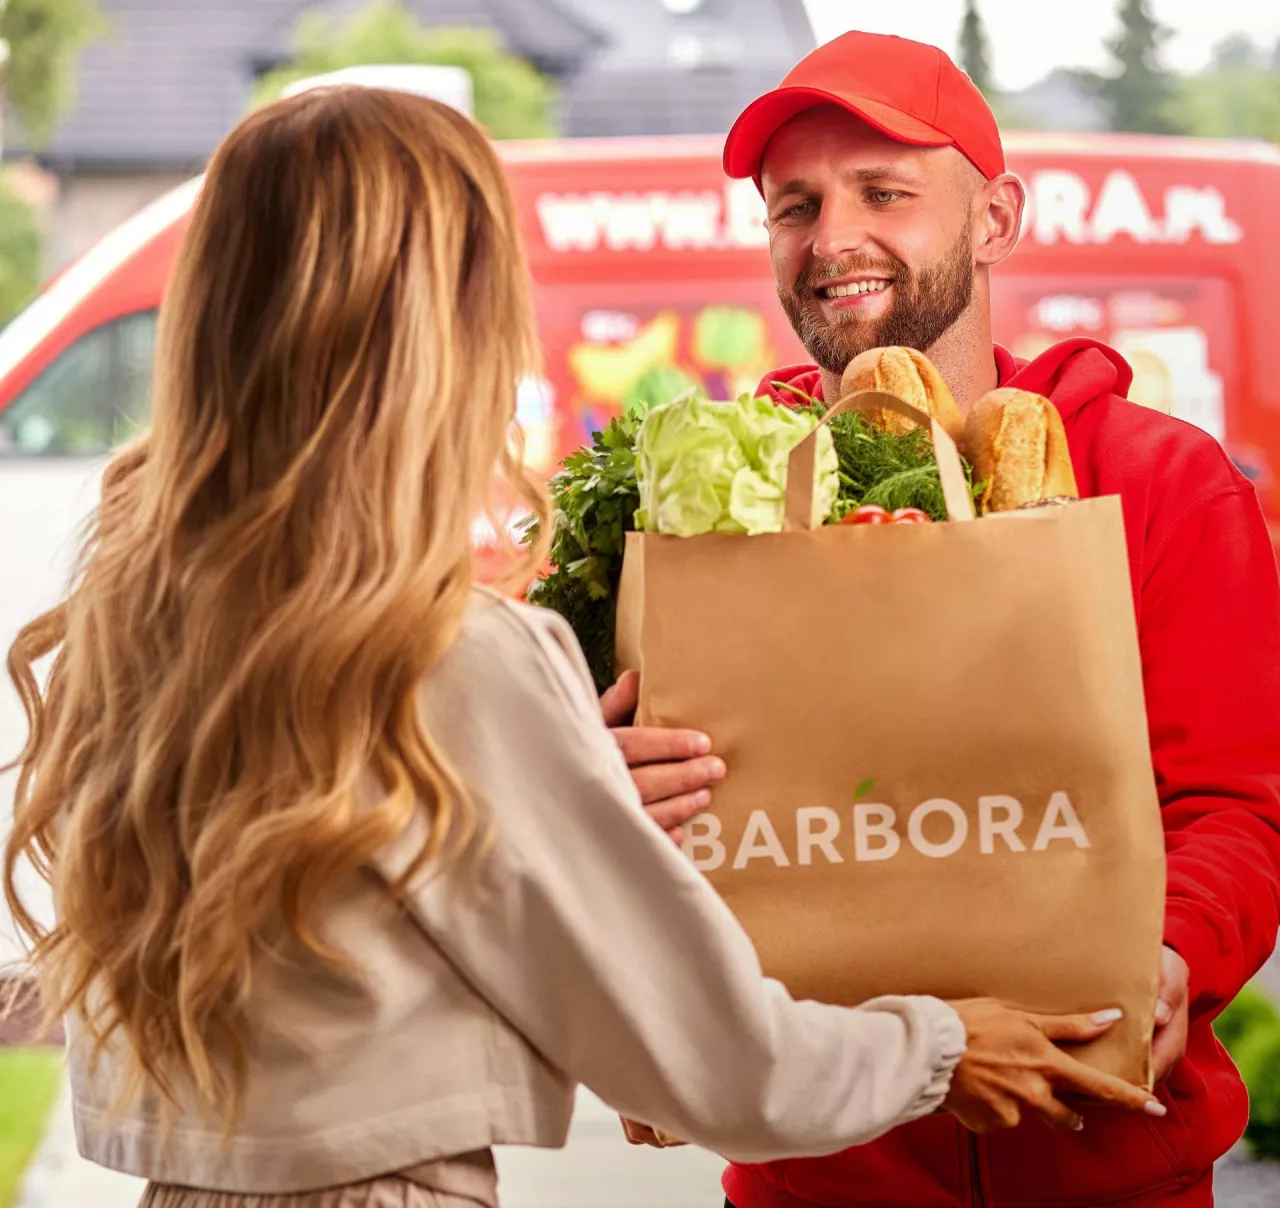 Barbora zrealizowała badania wyniki których pokazują, że wbrew pozorom preferencje zakupowe dotyczące zakupów spożywczych nie są sprzężone z płcią (Barbora.pl)